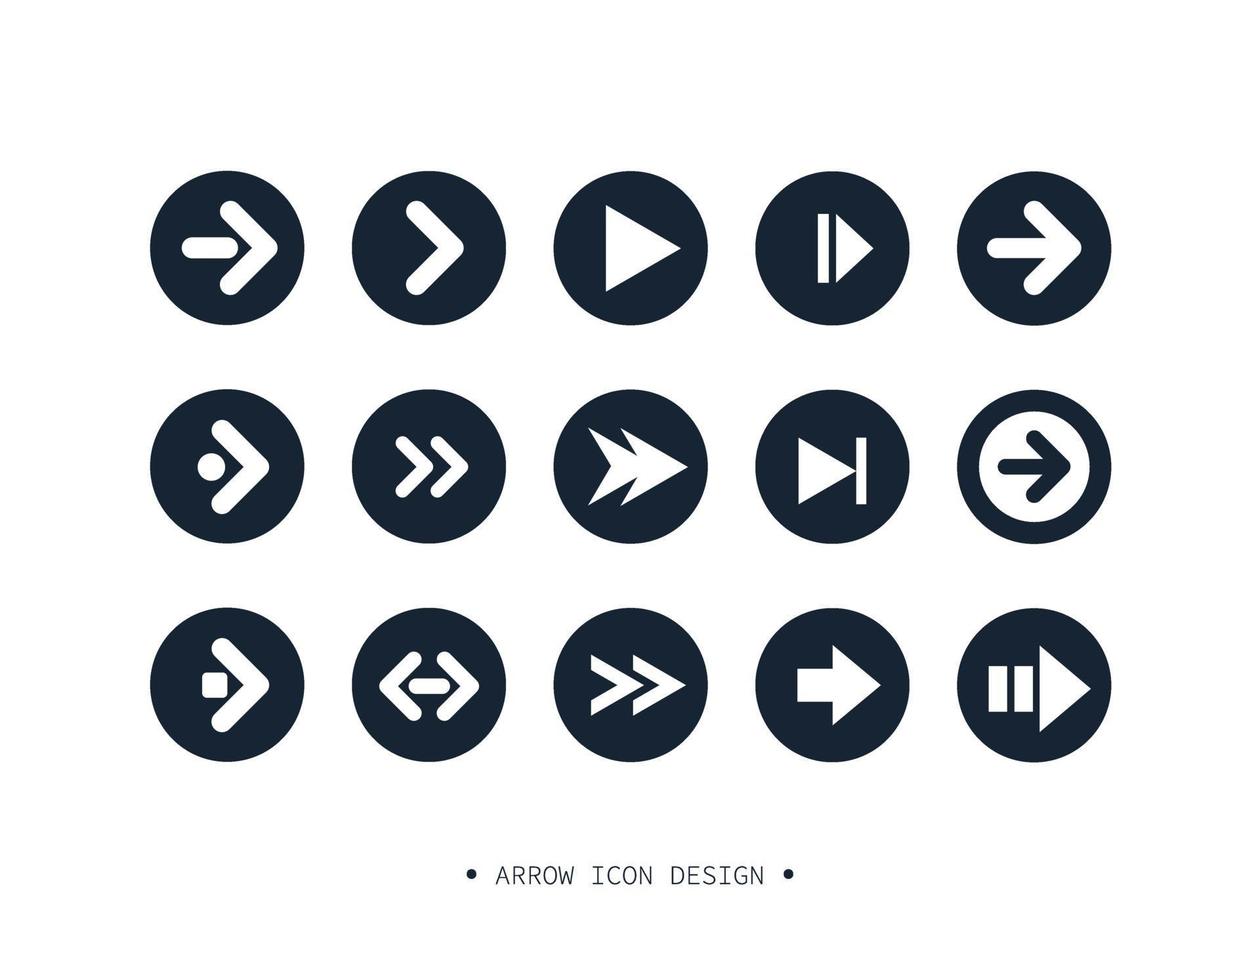 Arrow icon collection design. vector